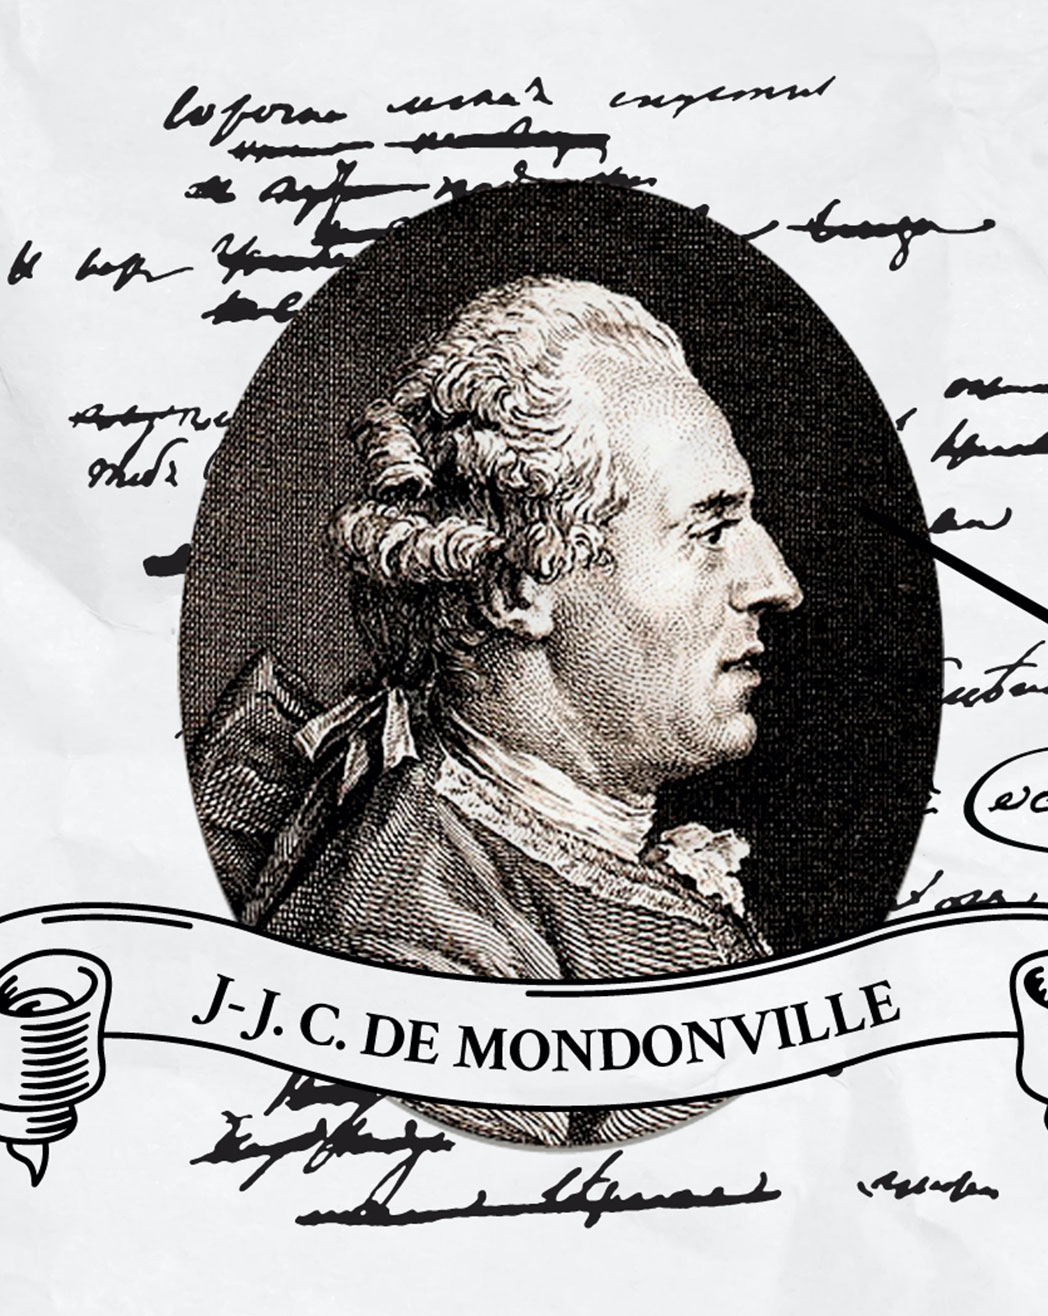 J.J.C de Mondonville